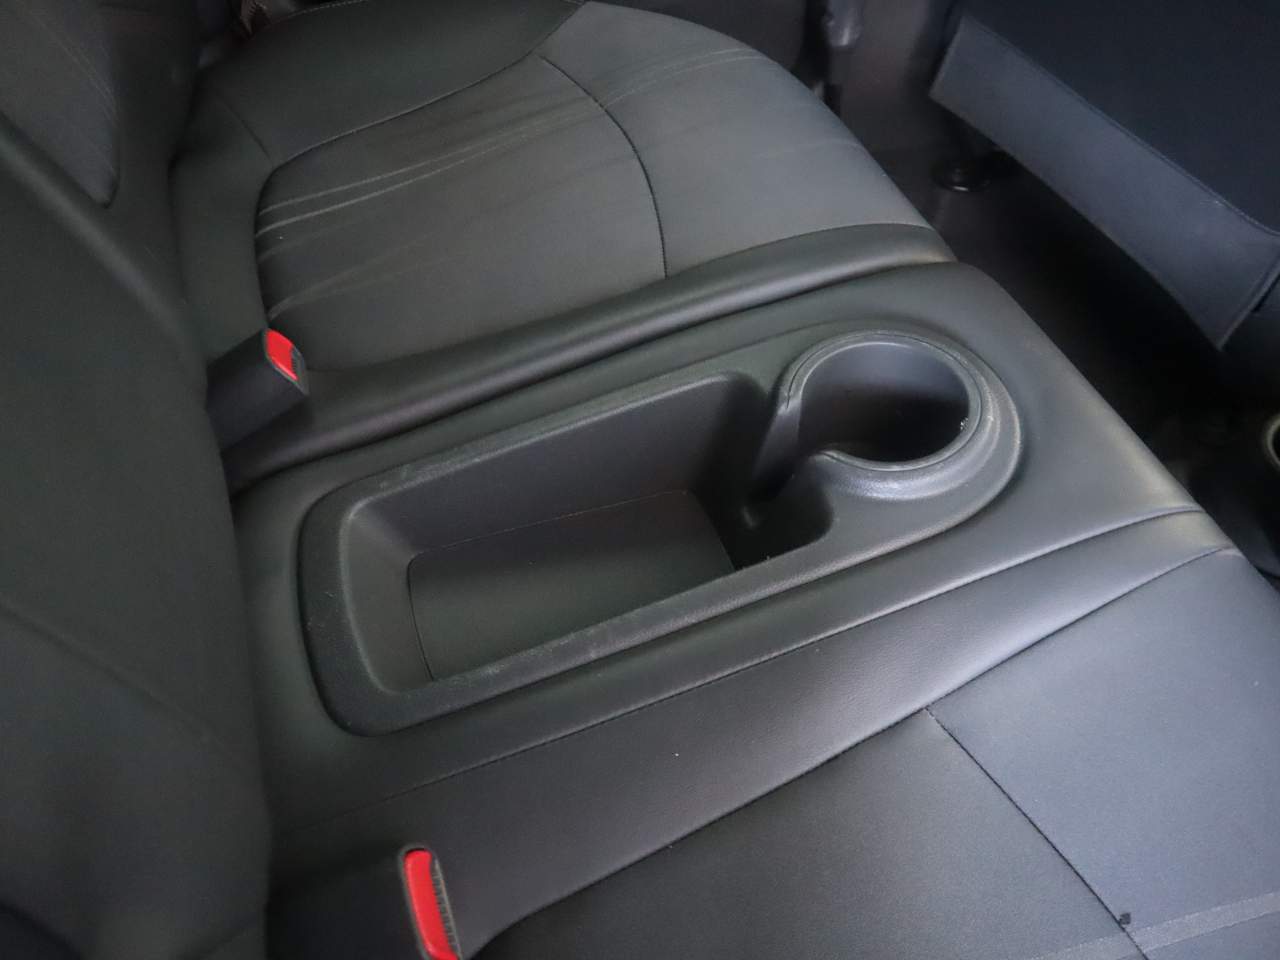 2015 Chevrolet Spark 1LT CVT